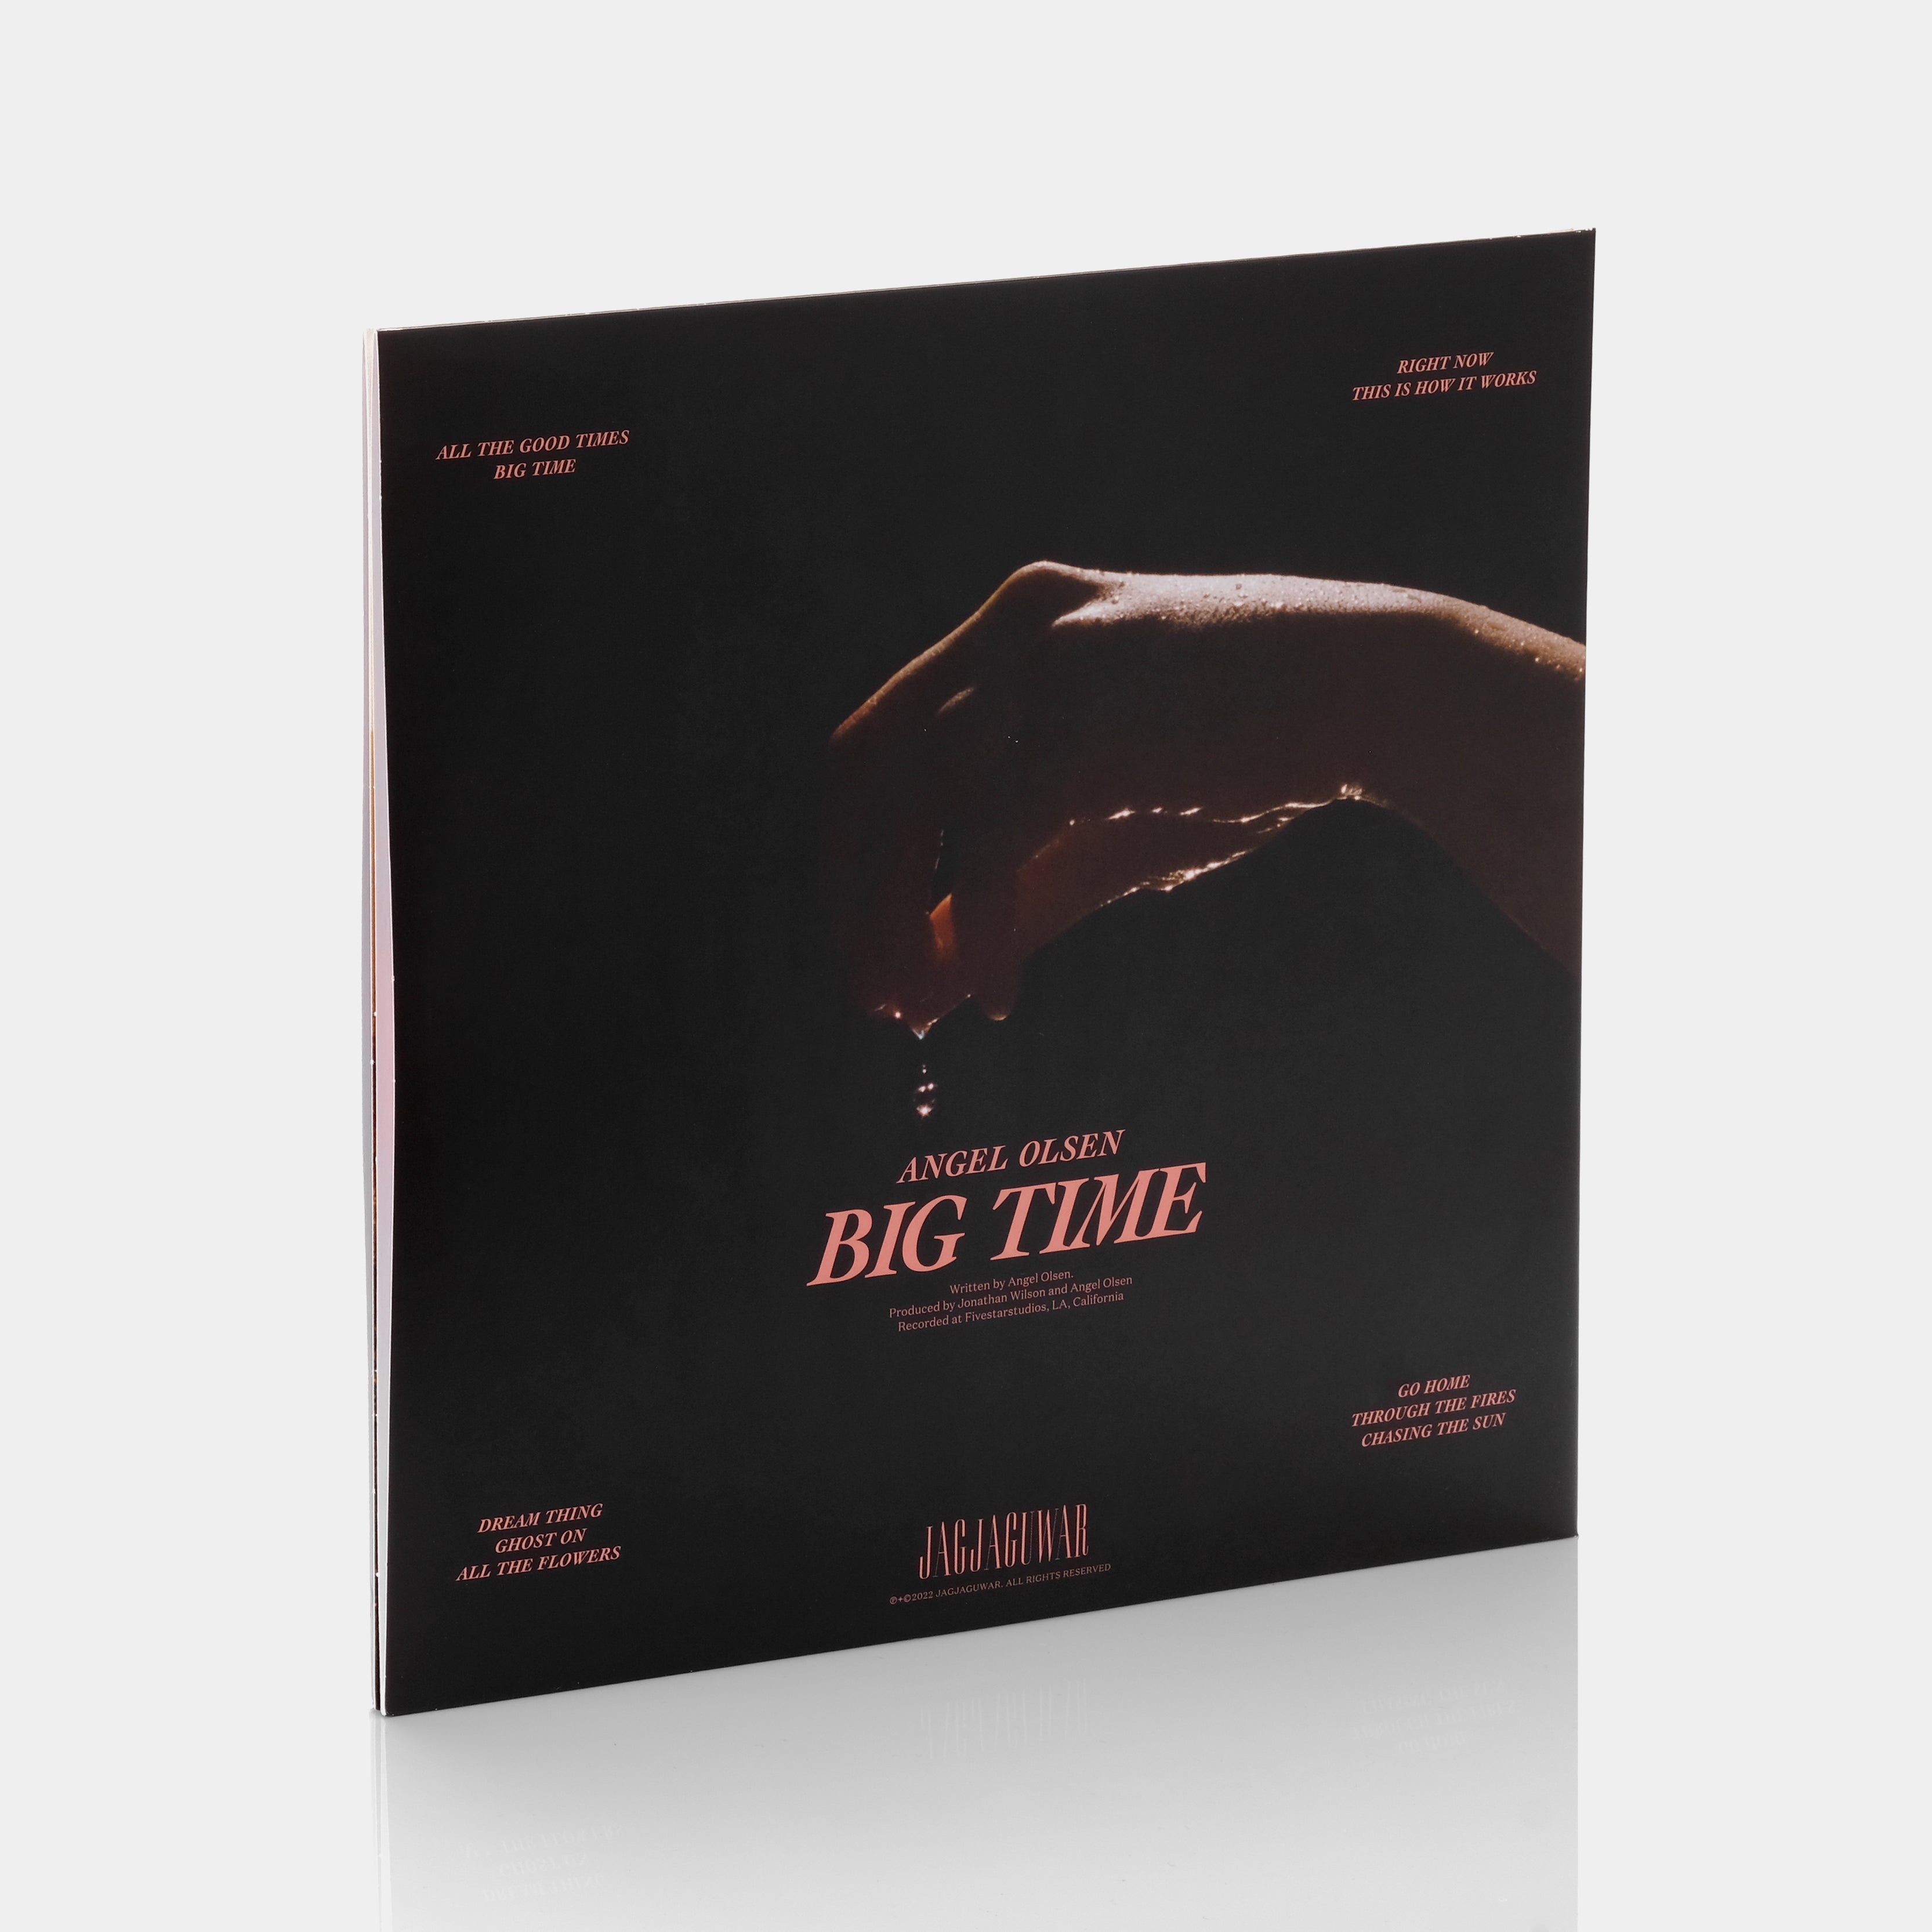 Angel Olsen - Big Time 2xLP Opaque Pink Vinyl Record